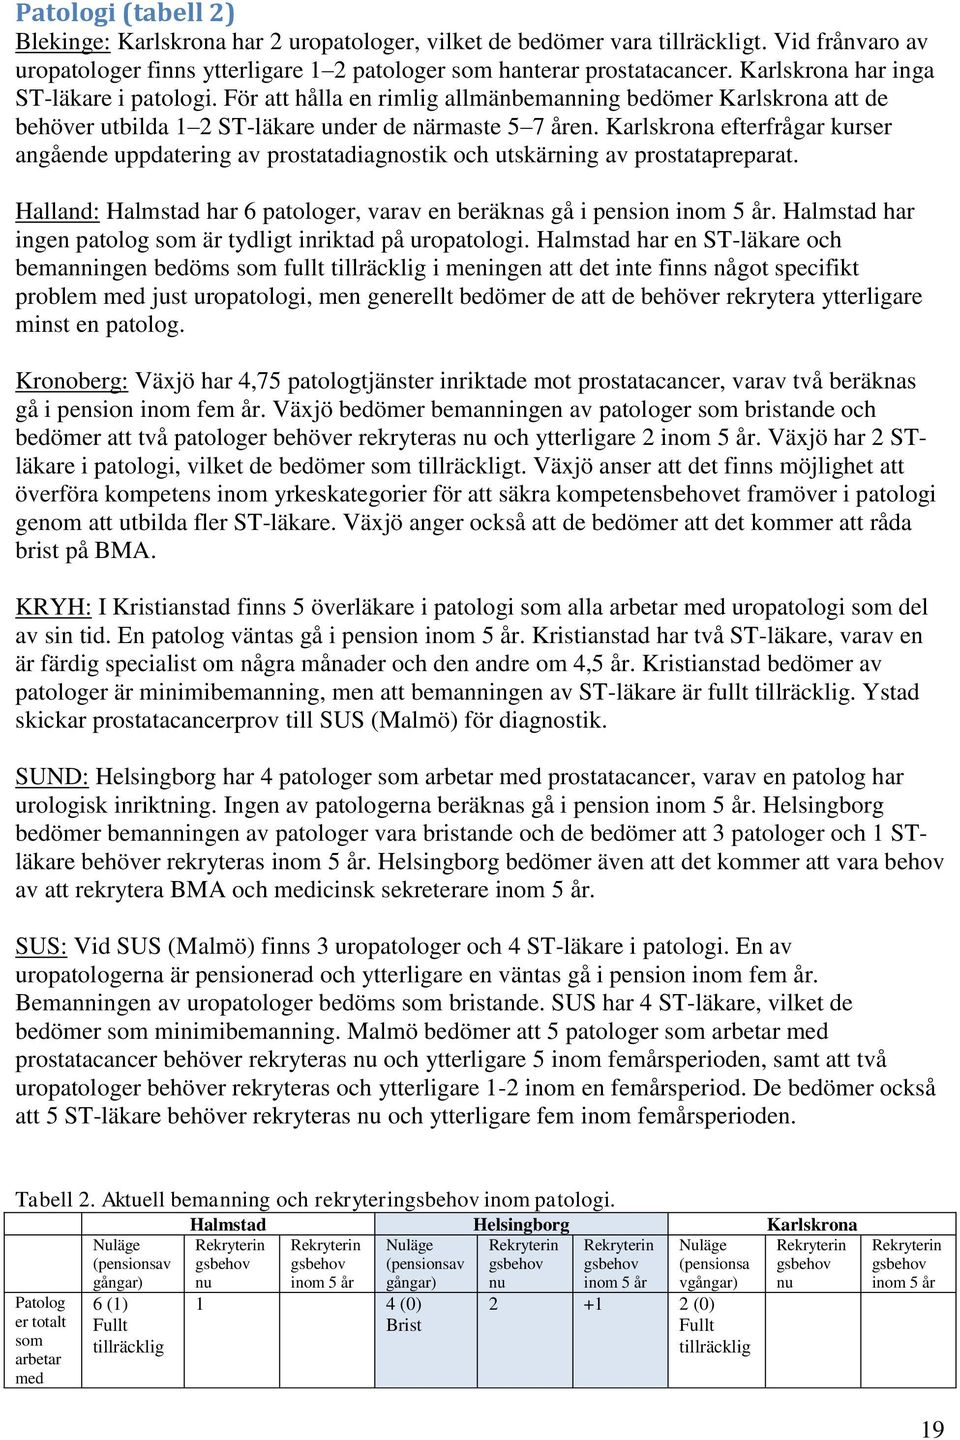 Karlskrona efterfrågar kurser angående uppdatering av prostatadiagnostik och utskärning av prostatapreparat. Halland: Halmstad har 6 patologer, varav en beräknas gå i pension inom 5 år.